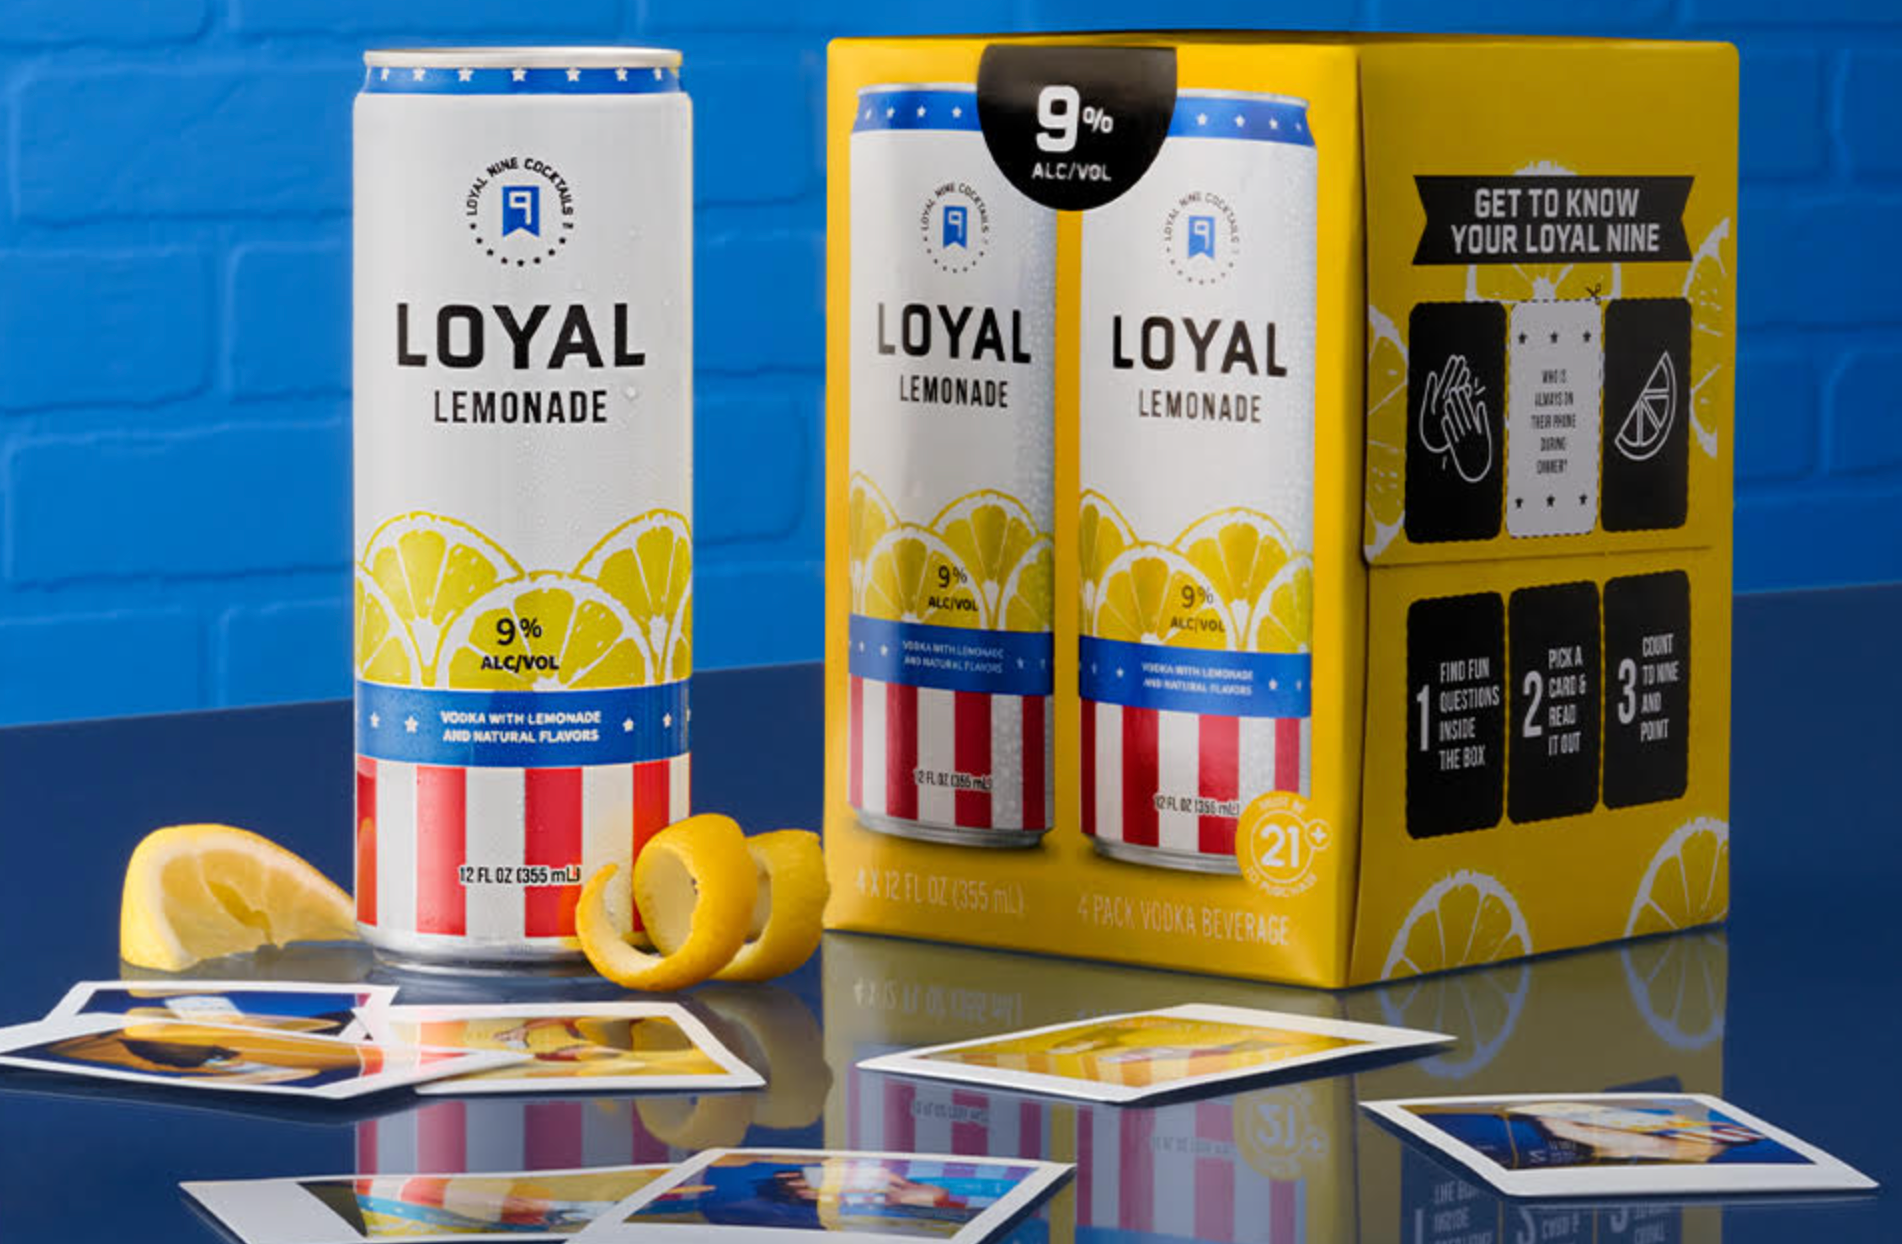 loyal-9-lemonade.png